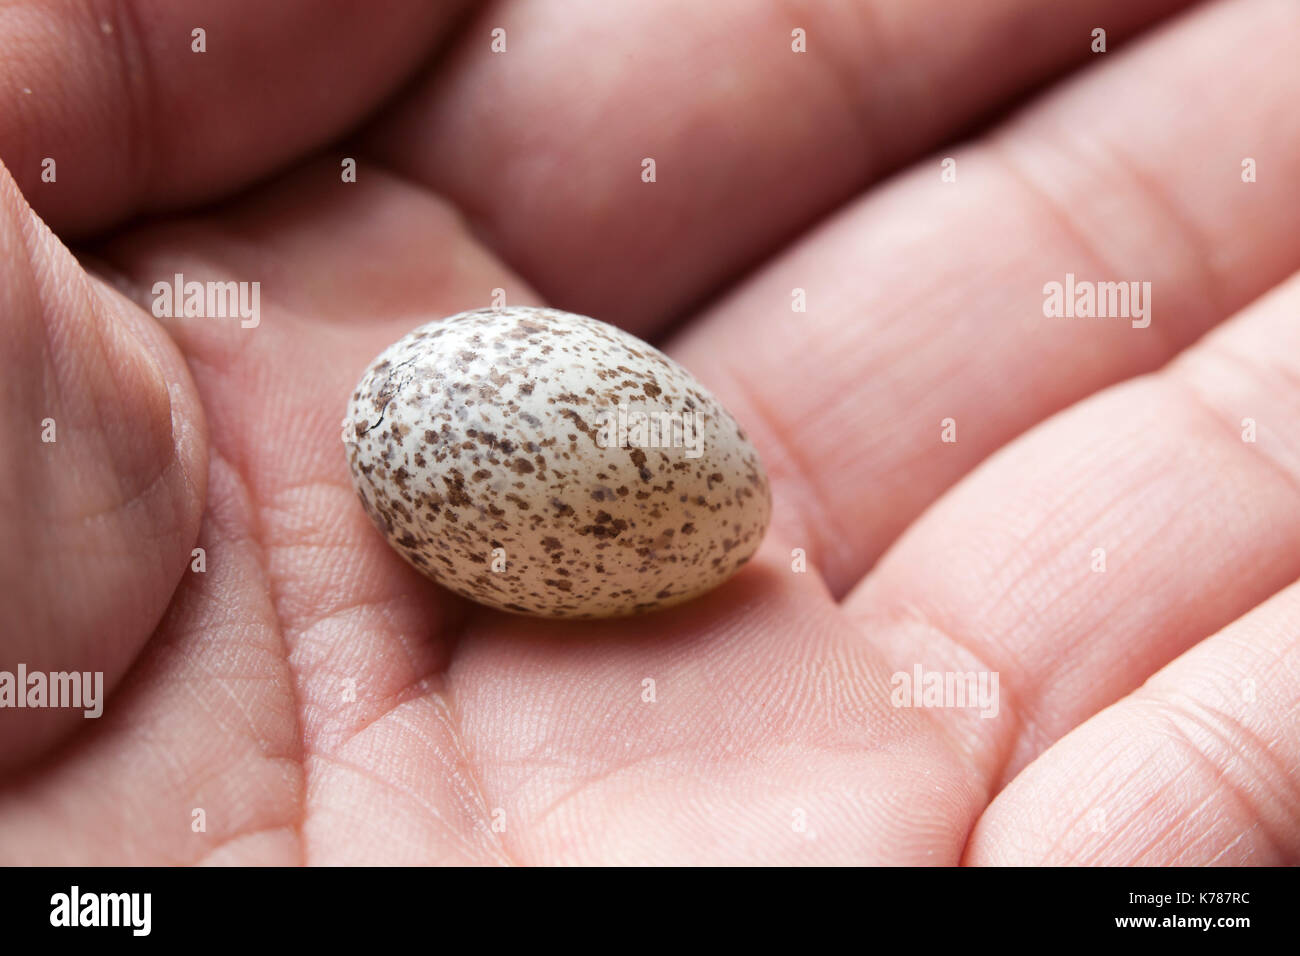 Mann hält Northern cardinal bird Egg (Cardinalis cardinalis) - USA Stockfoto